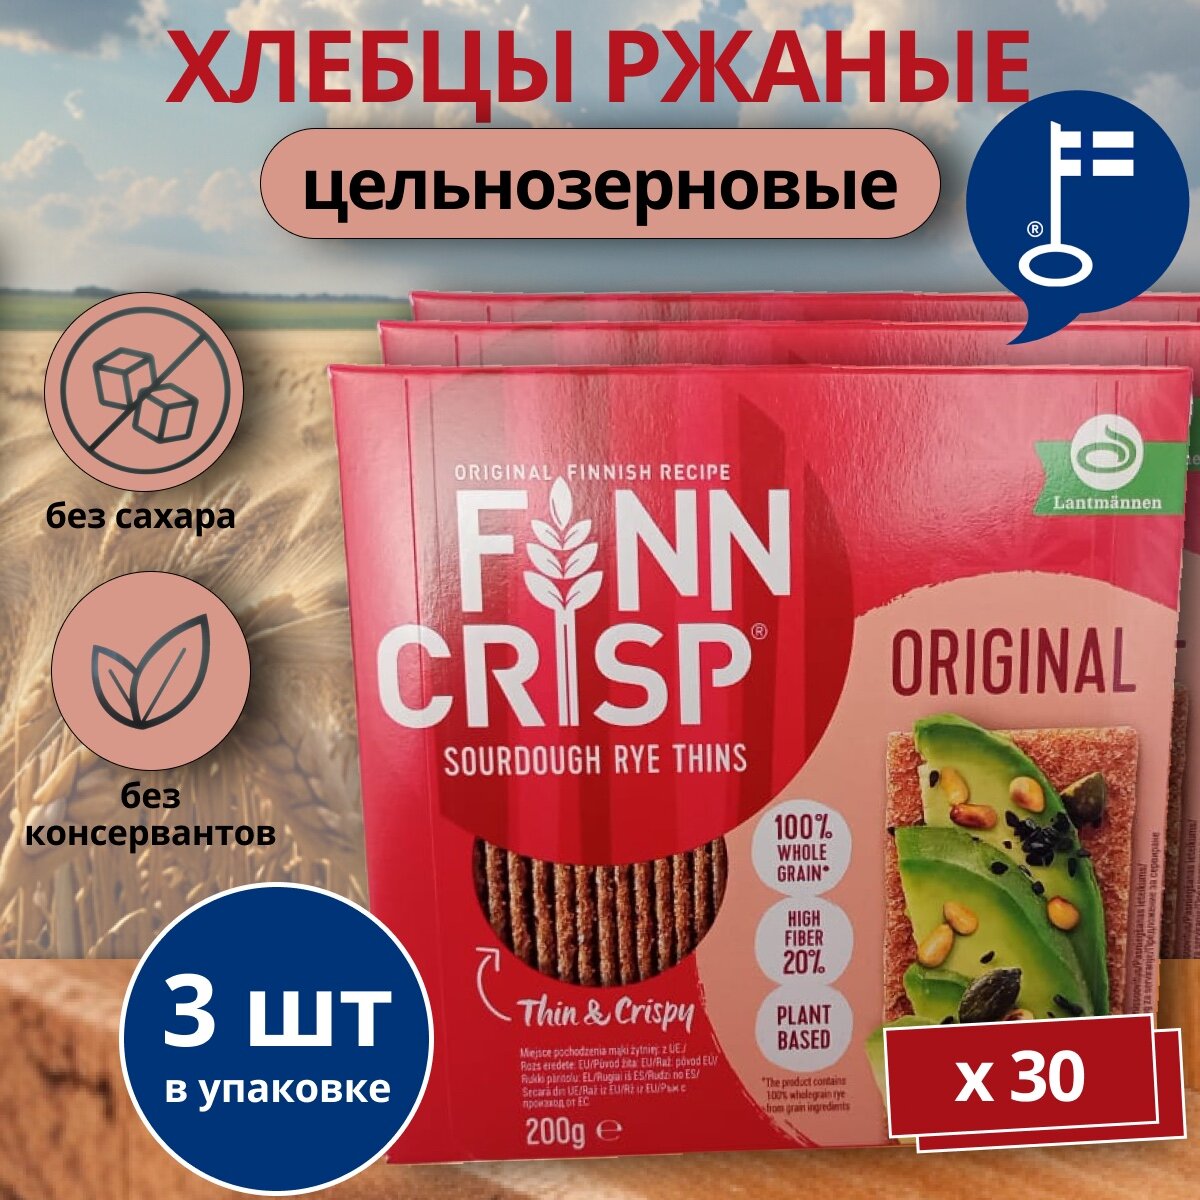 Хлебцы ржаные FINN CRISP Original 200 г. x3 (Финн крисп Оригинальные) из Финляндии